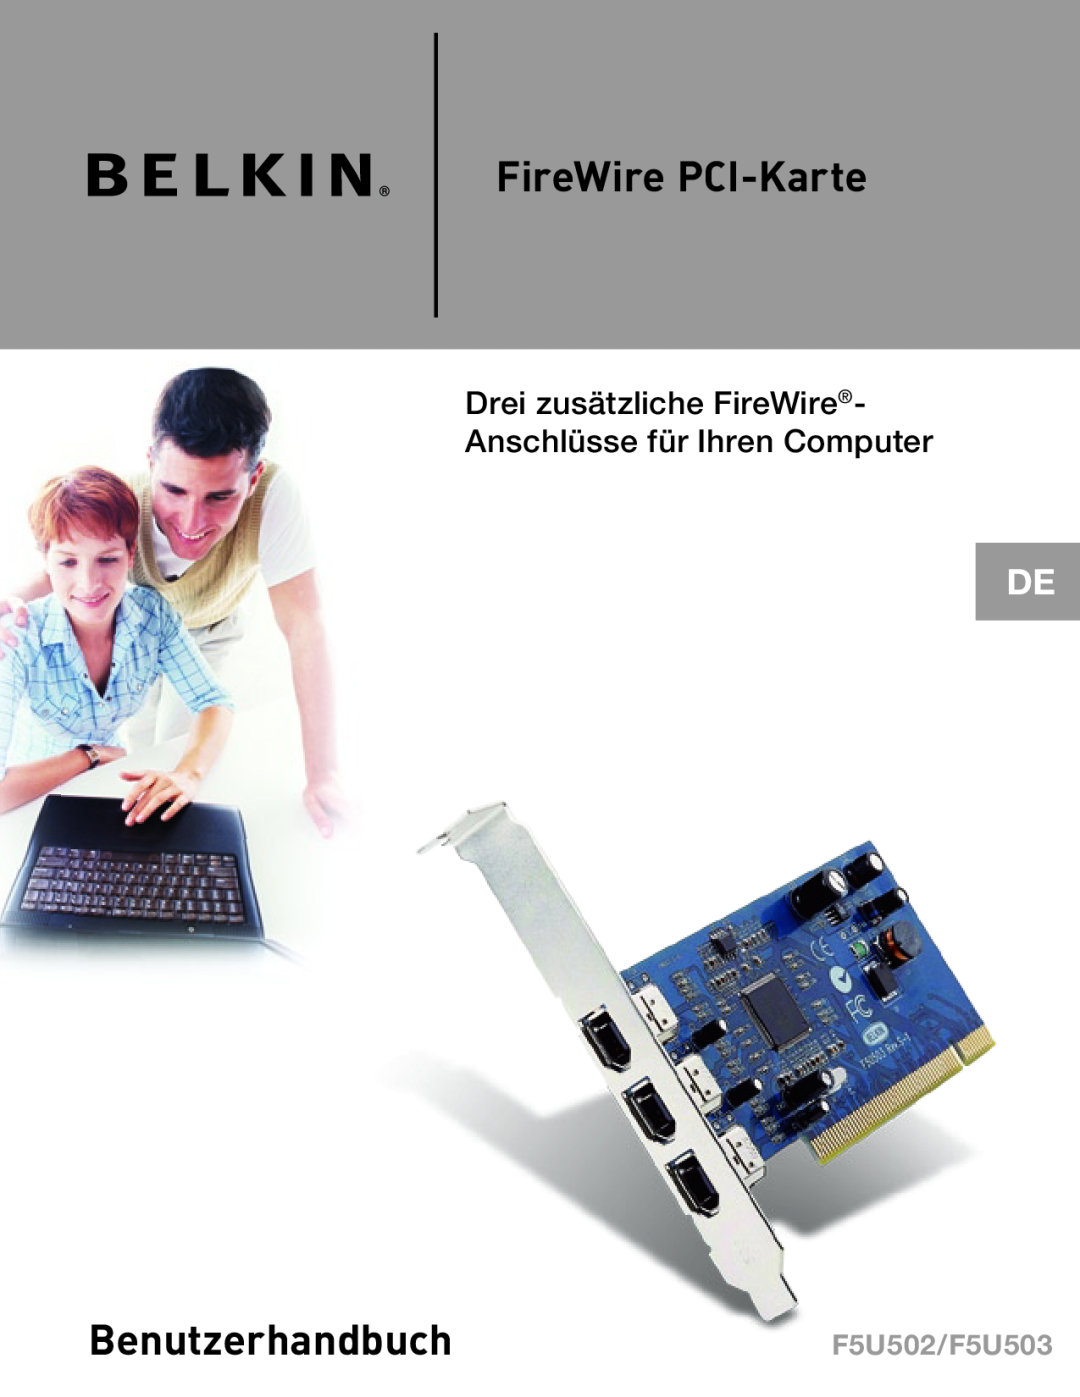 Belkin FireWire PCI-Karte, BenutzerhandbuchF5U502/F5U503, Drei zusätzliche FireWire- Anschlüsse für Ihren Computer 